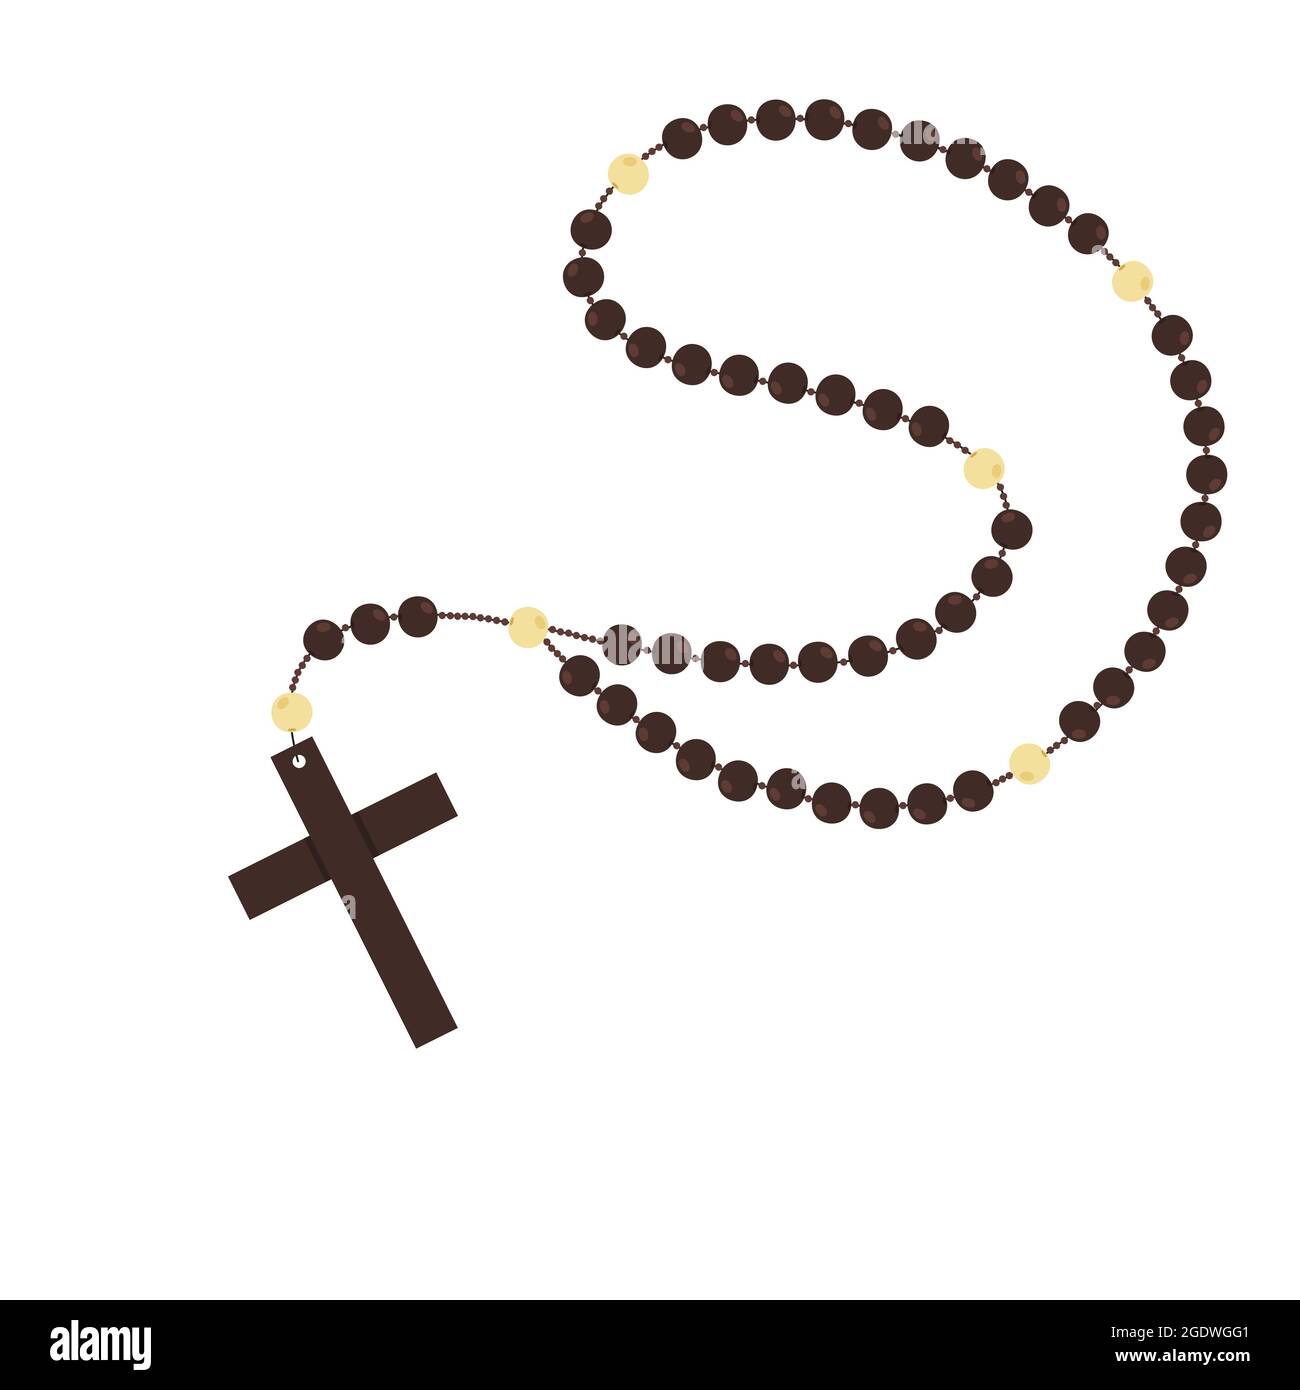 Cuentas de rosario católico de madera marrón, símbolos religiosos